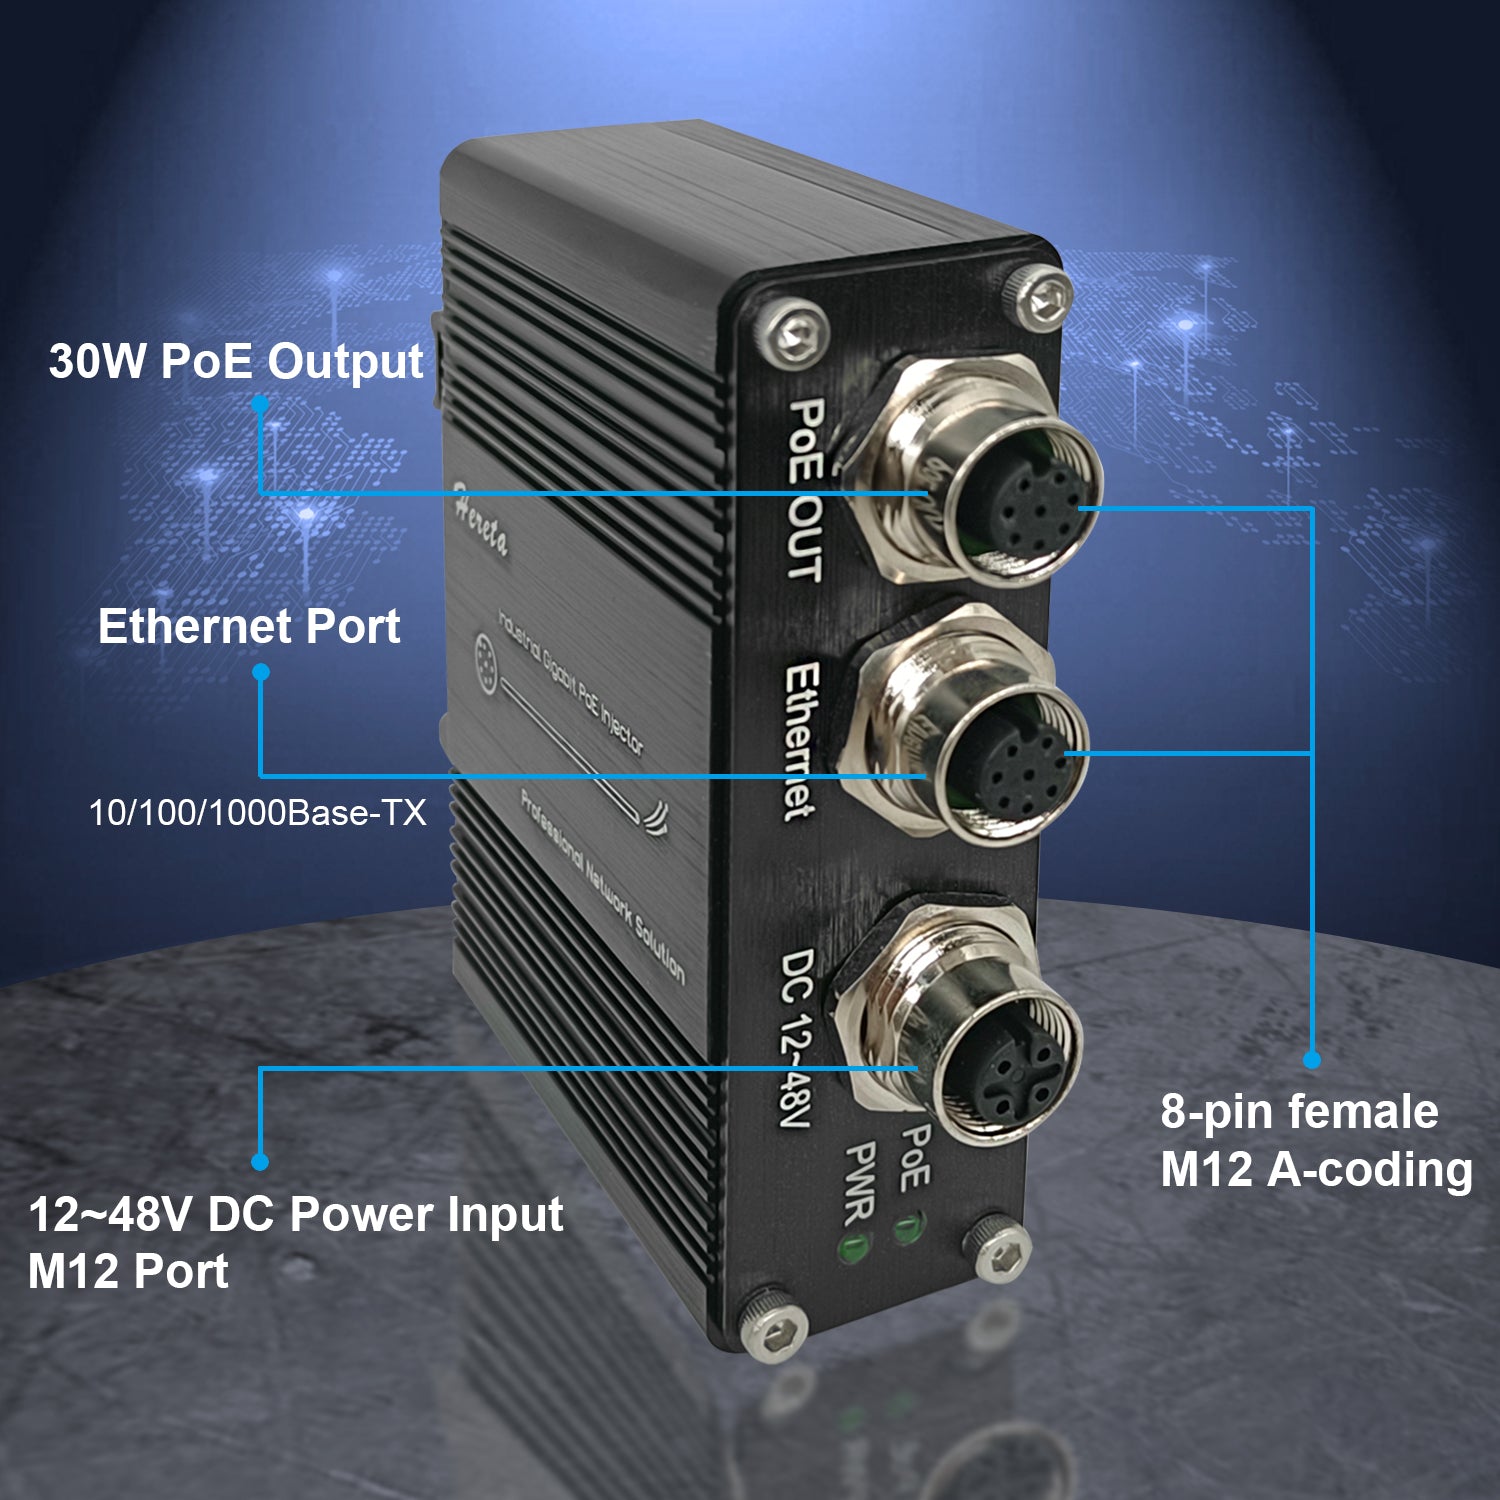 日本最大級 PoE Injector Industrial Gigabit PoE+ IEEE802.3 at 30W Hardened POE  Adapter with 12-48V DC Input DIN- Rail, Wall Mount